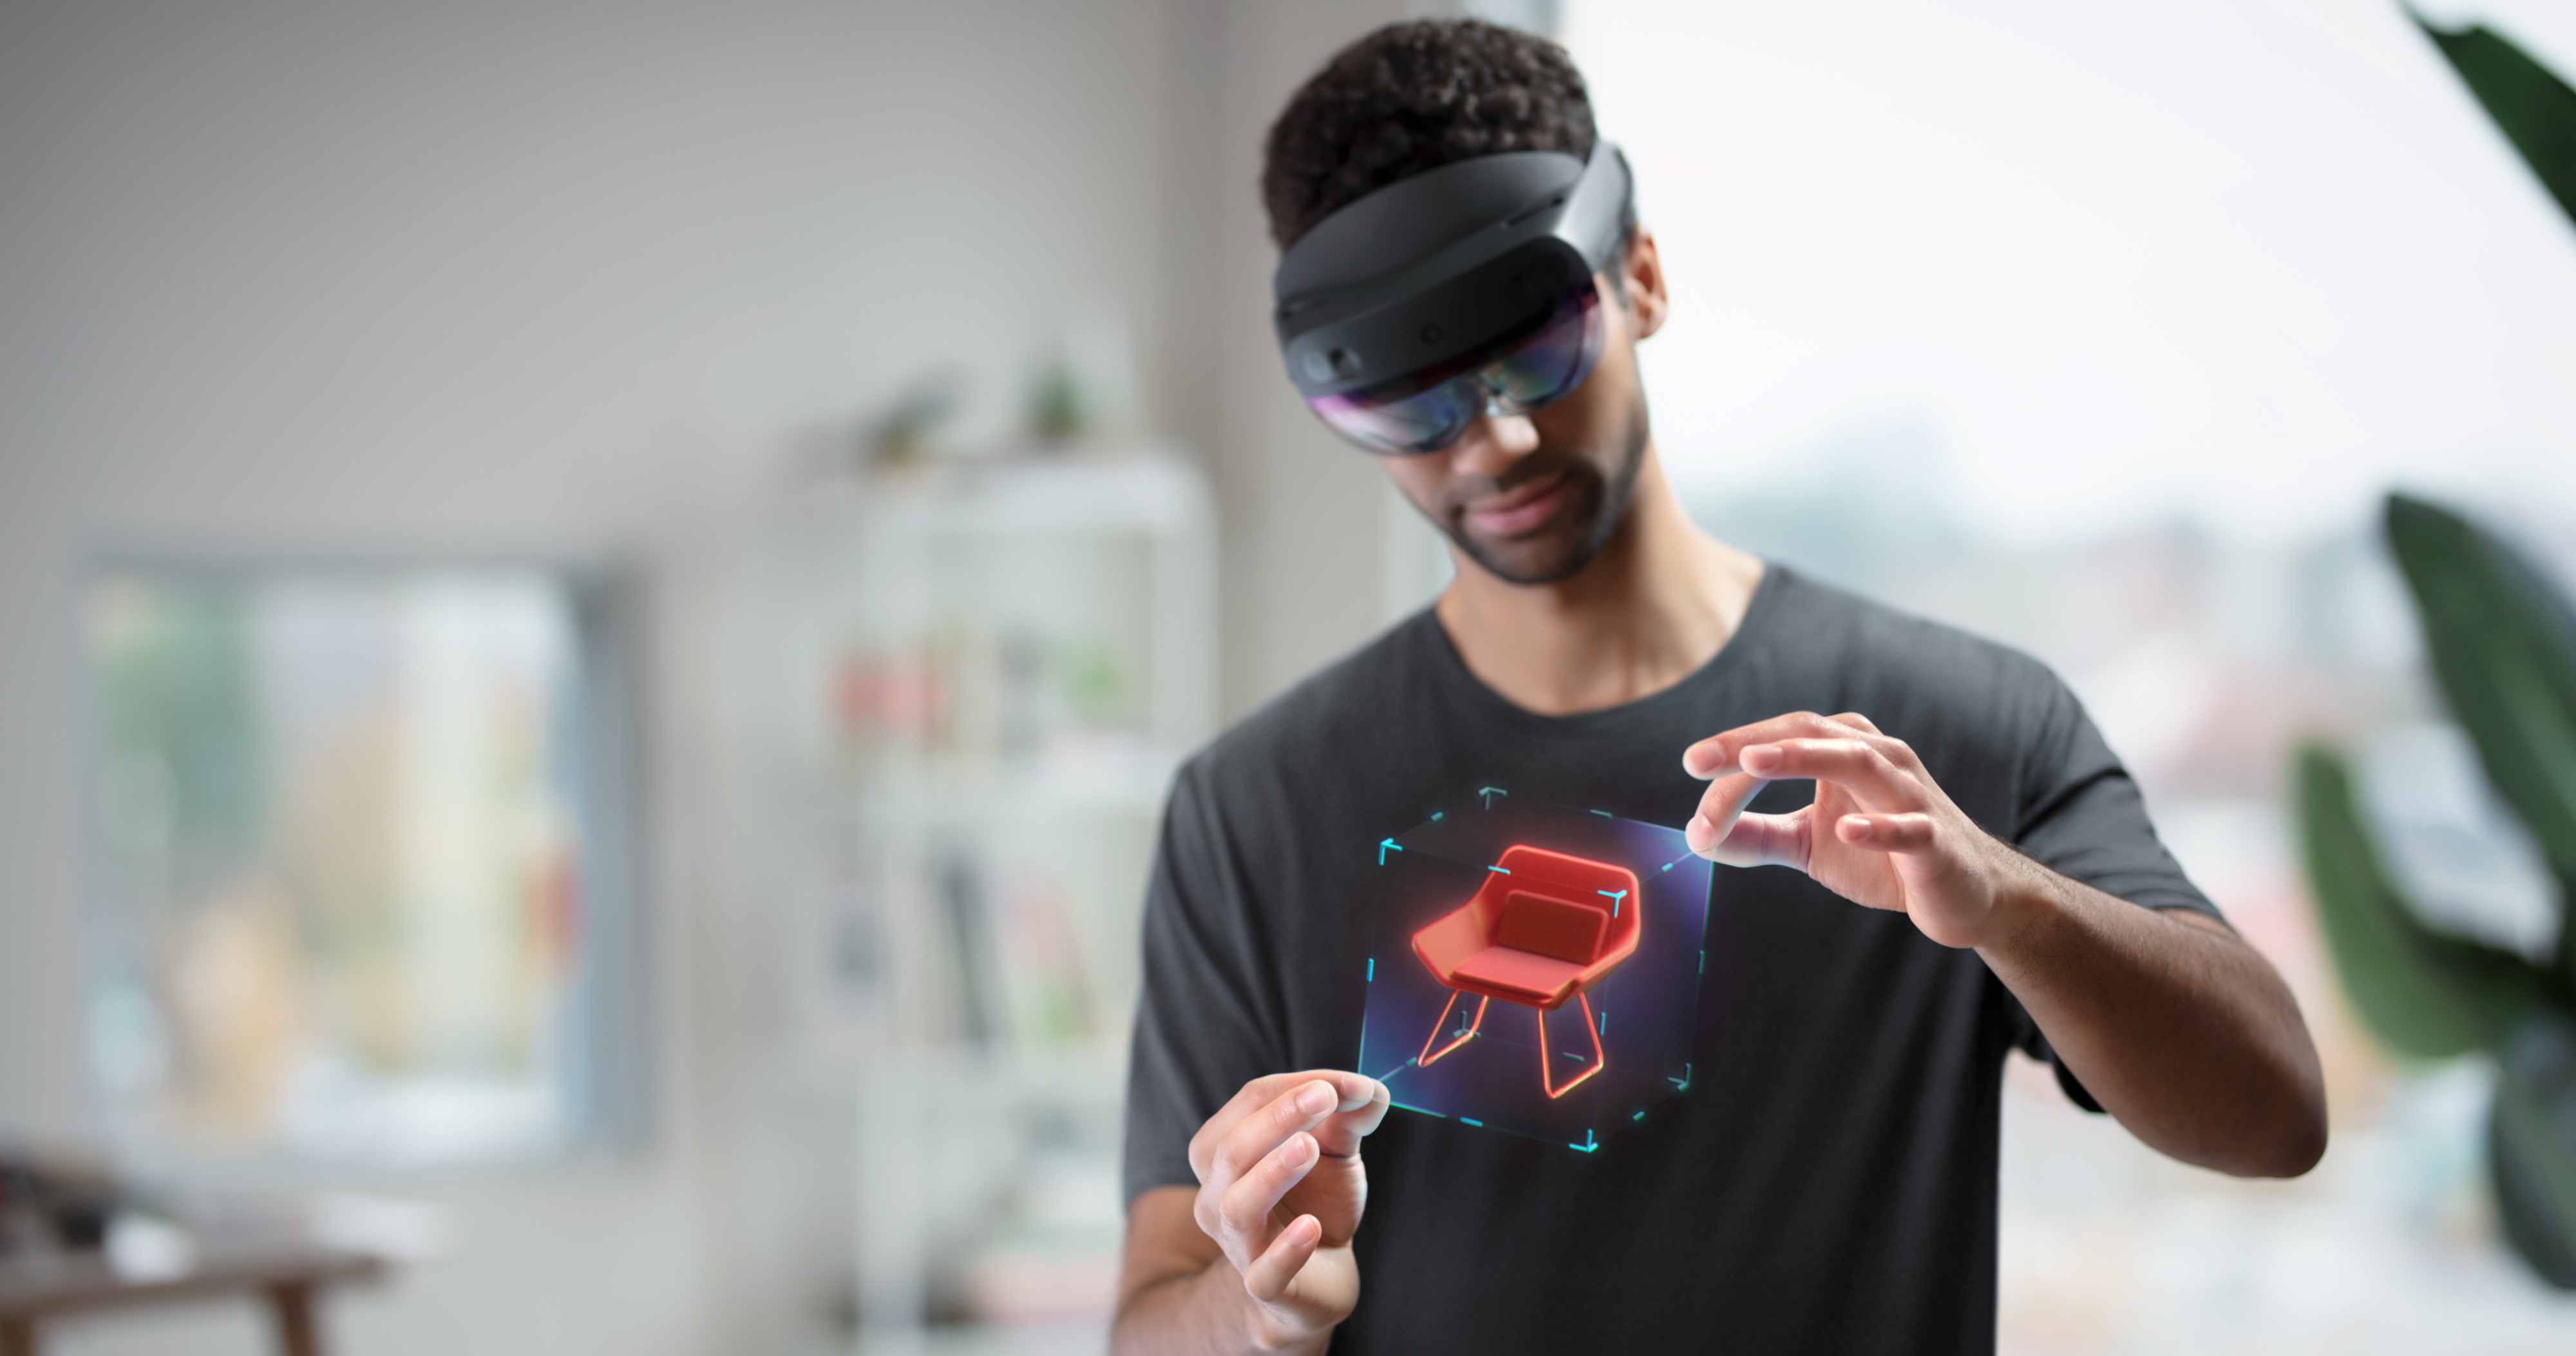 Abbildung eines Benutzers, der eine HoloLens trägt und ein Hologramm mit Handbewegungen manipuliert.